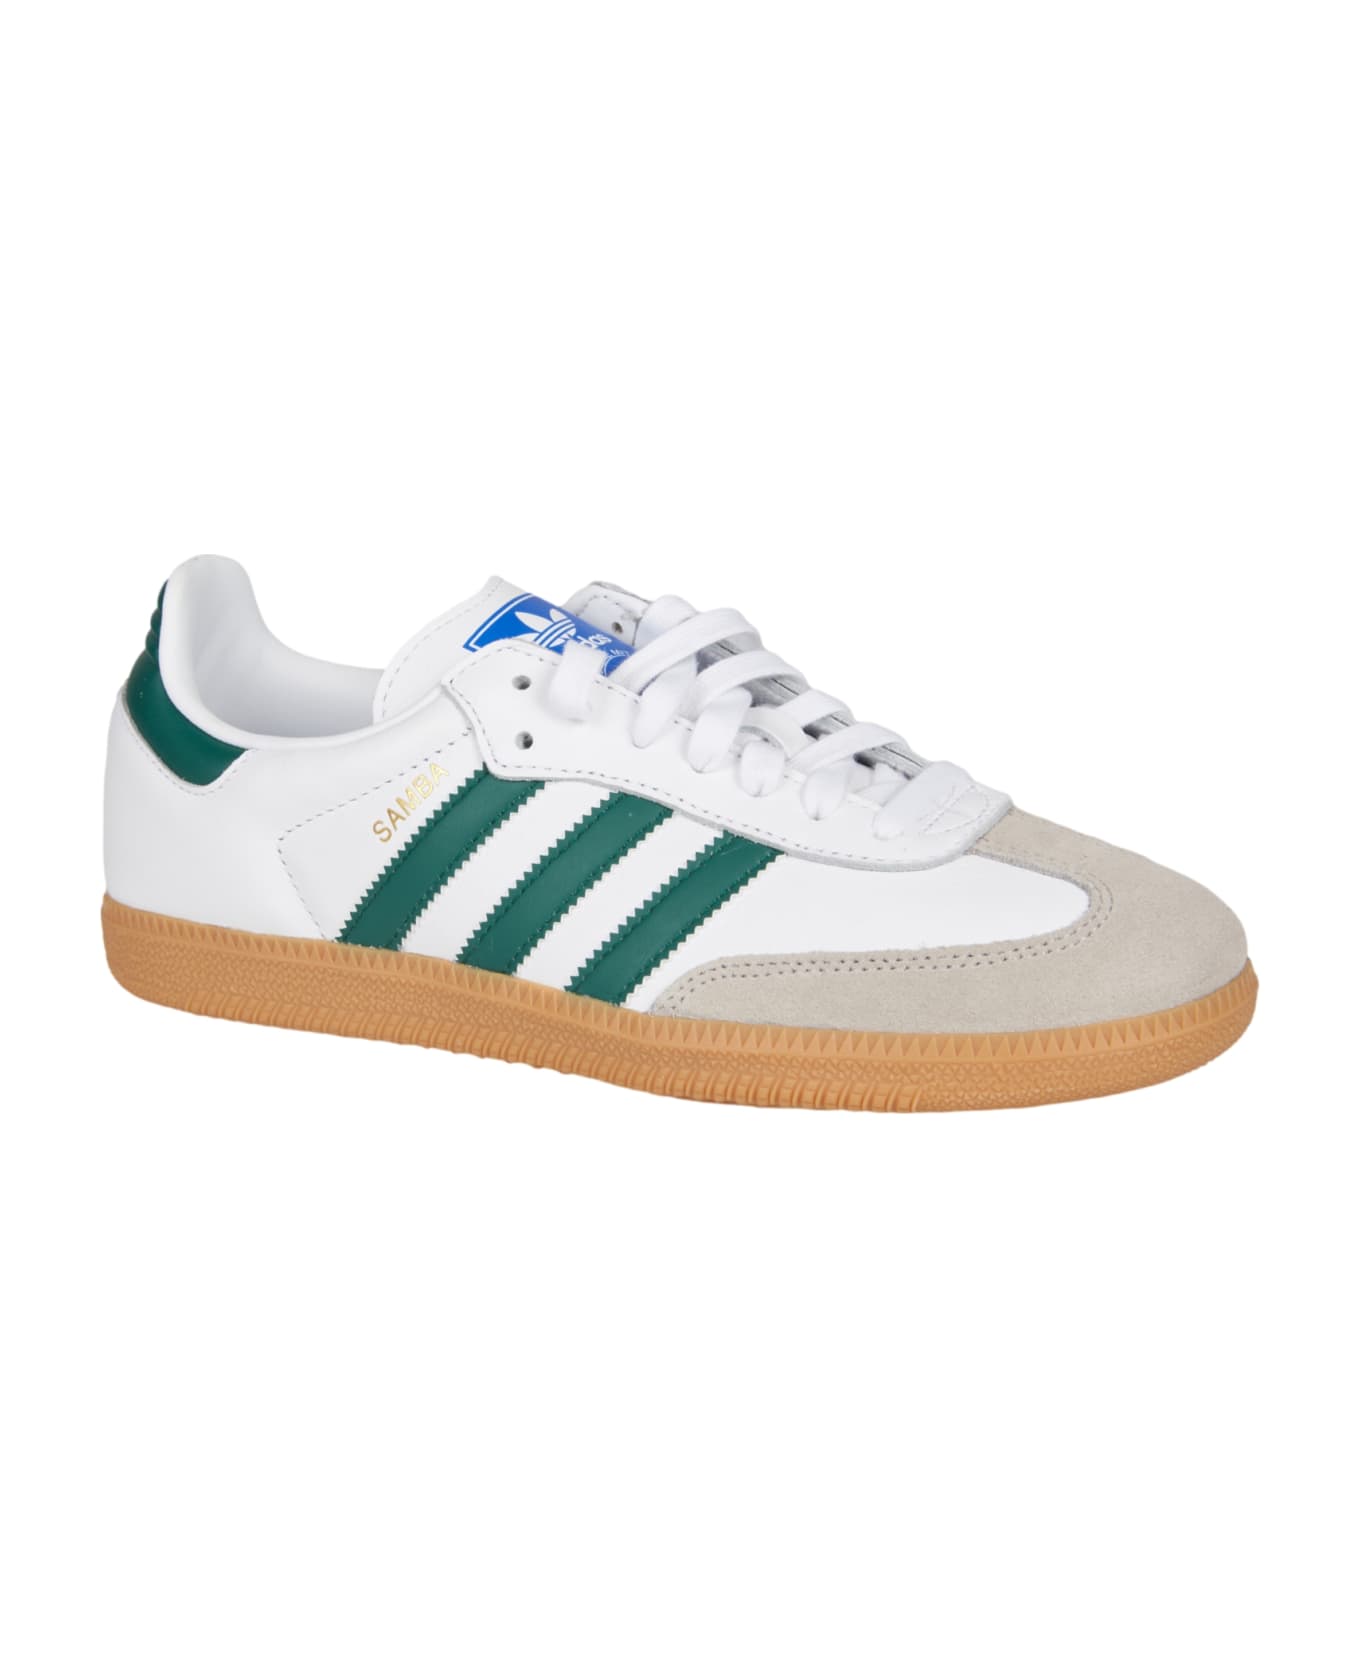 Adidas Samba Og Sneakers - White/Green